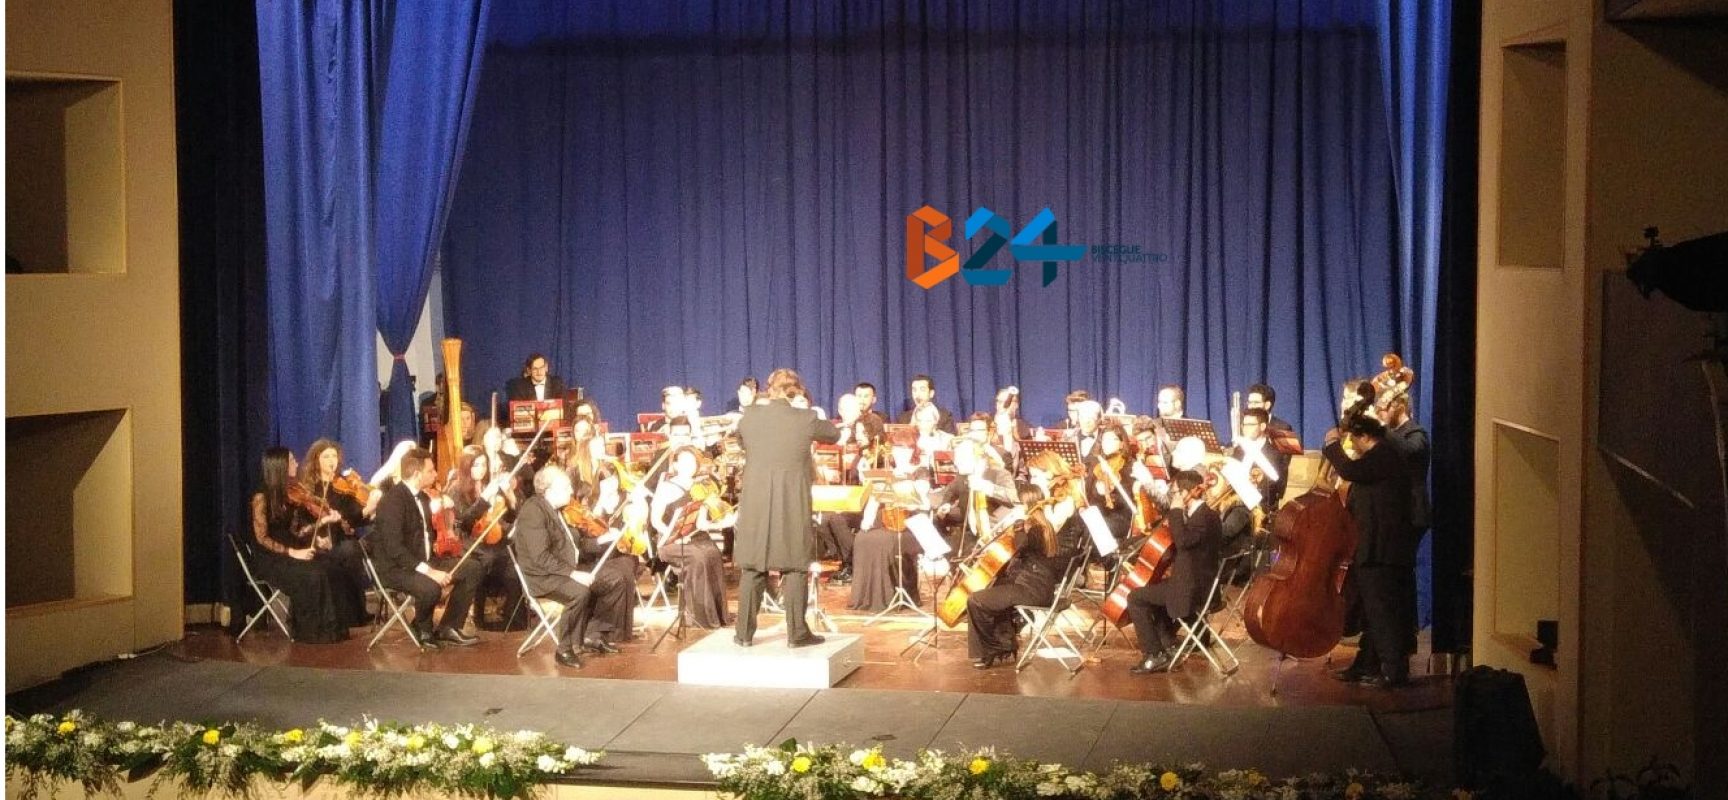 L’orchestra Biagio Abbate rende omaggio alla musica di Giuseppe Verdi